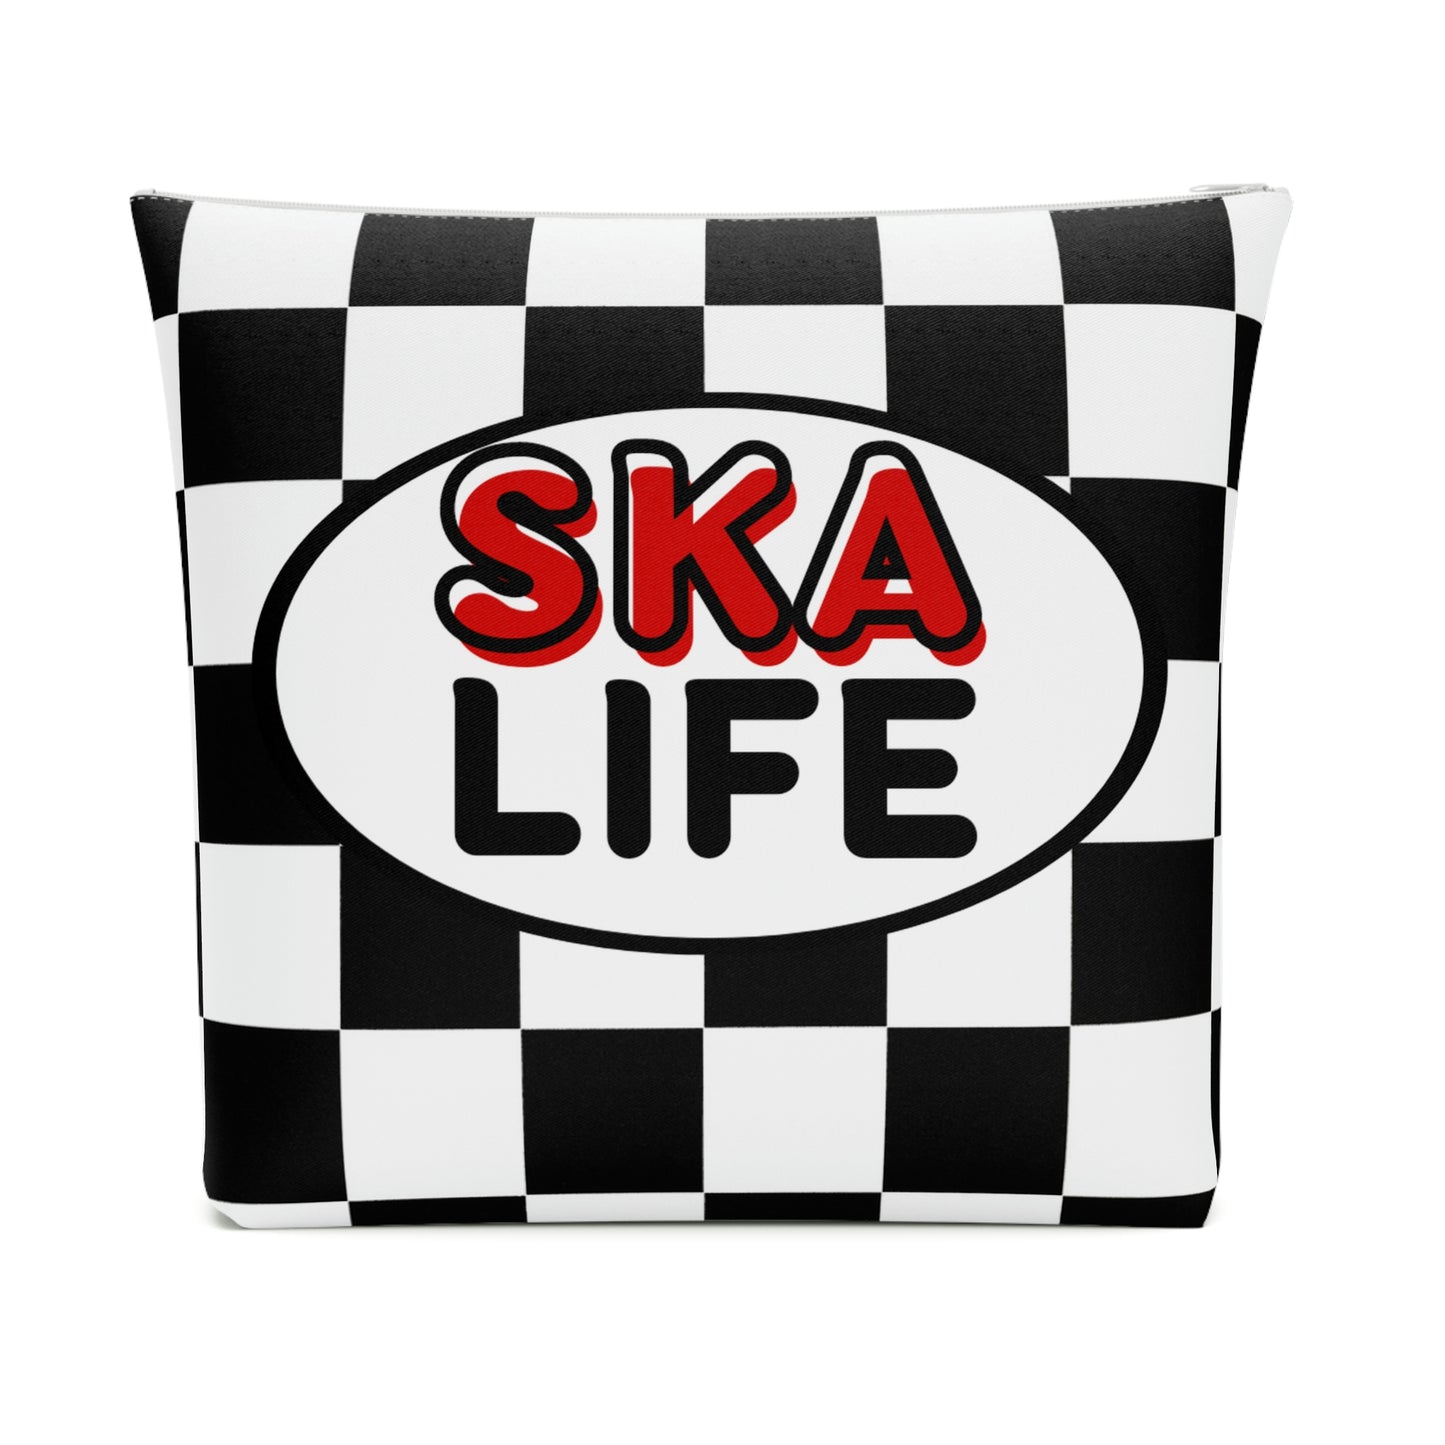 Ska life retro checkered Makeup Bag